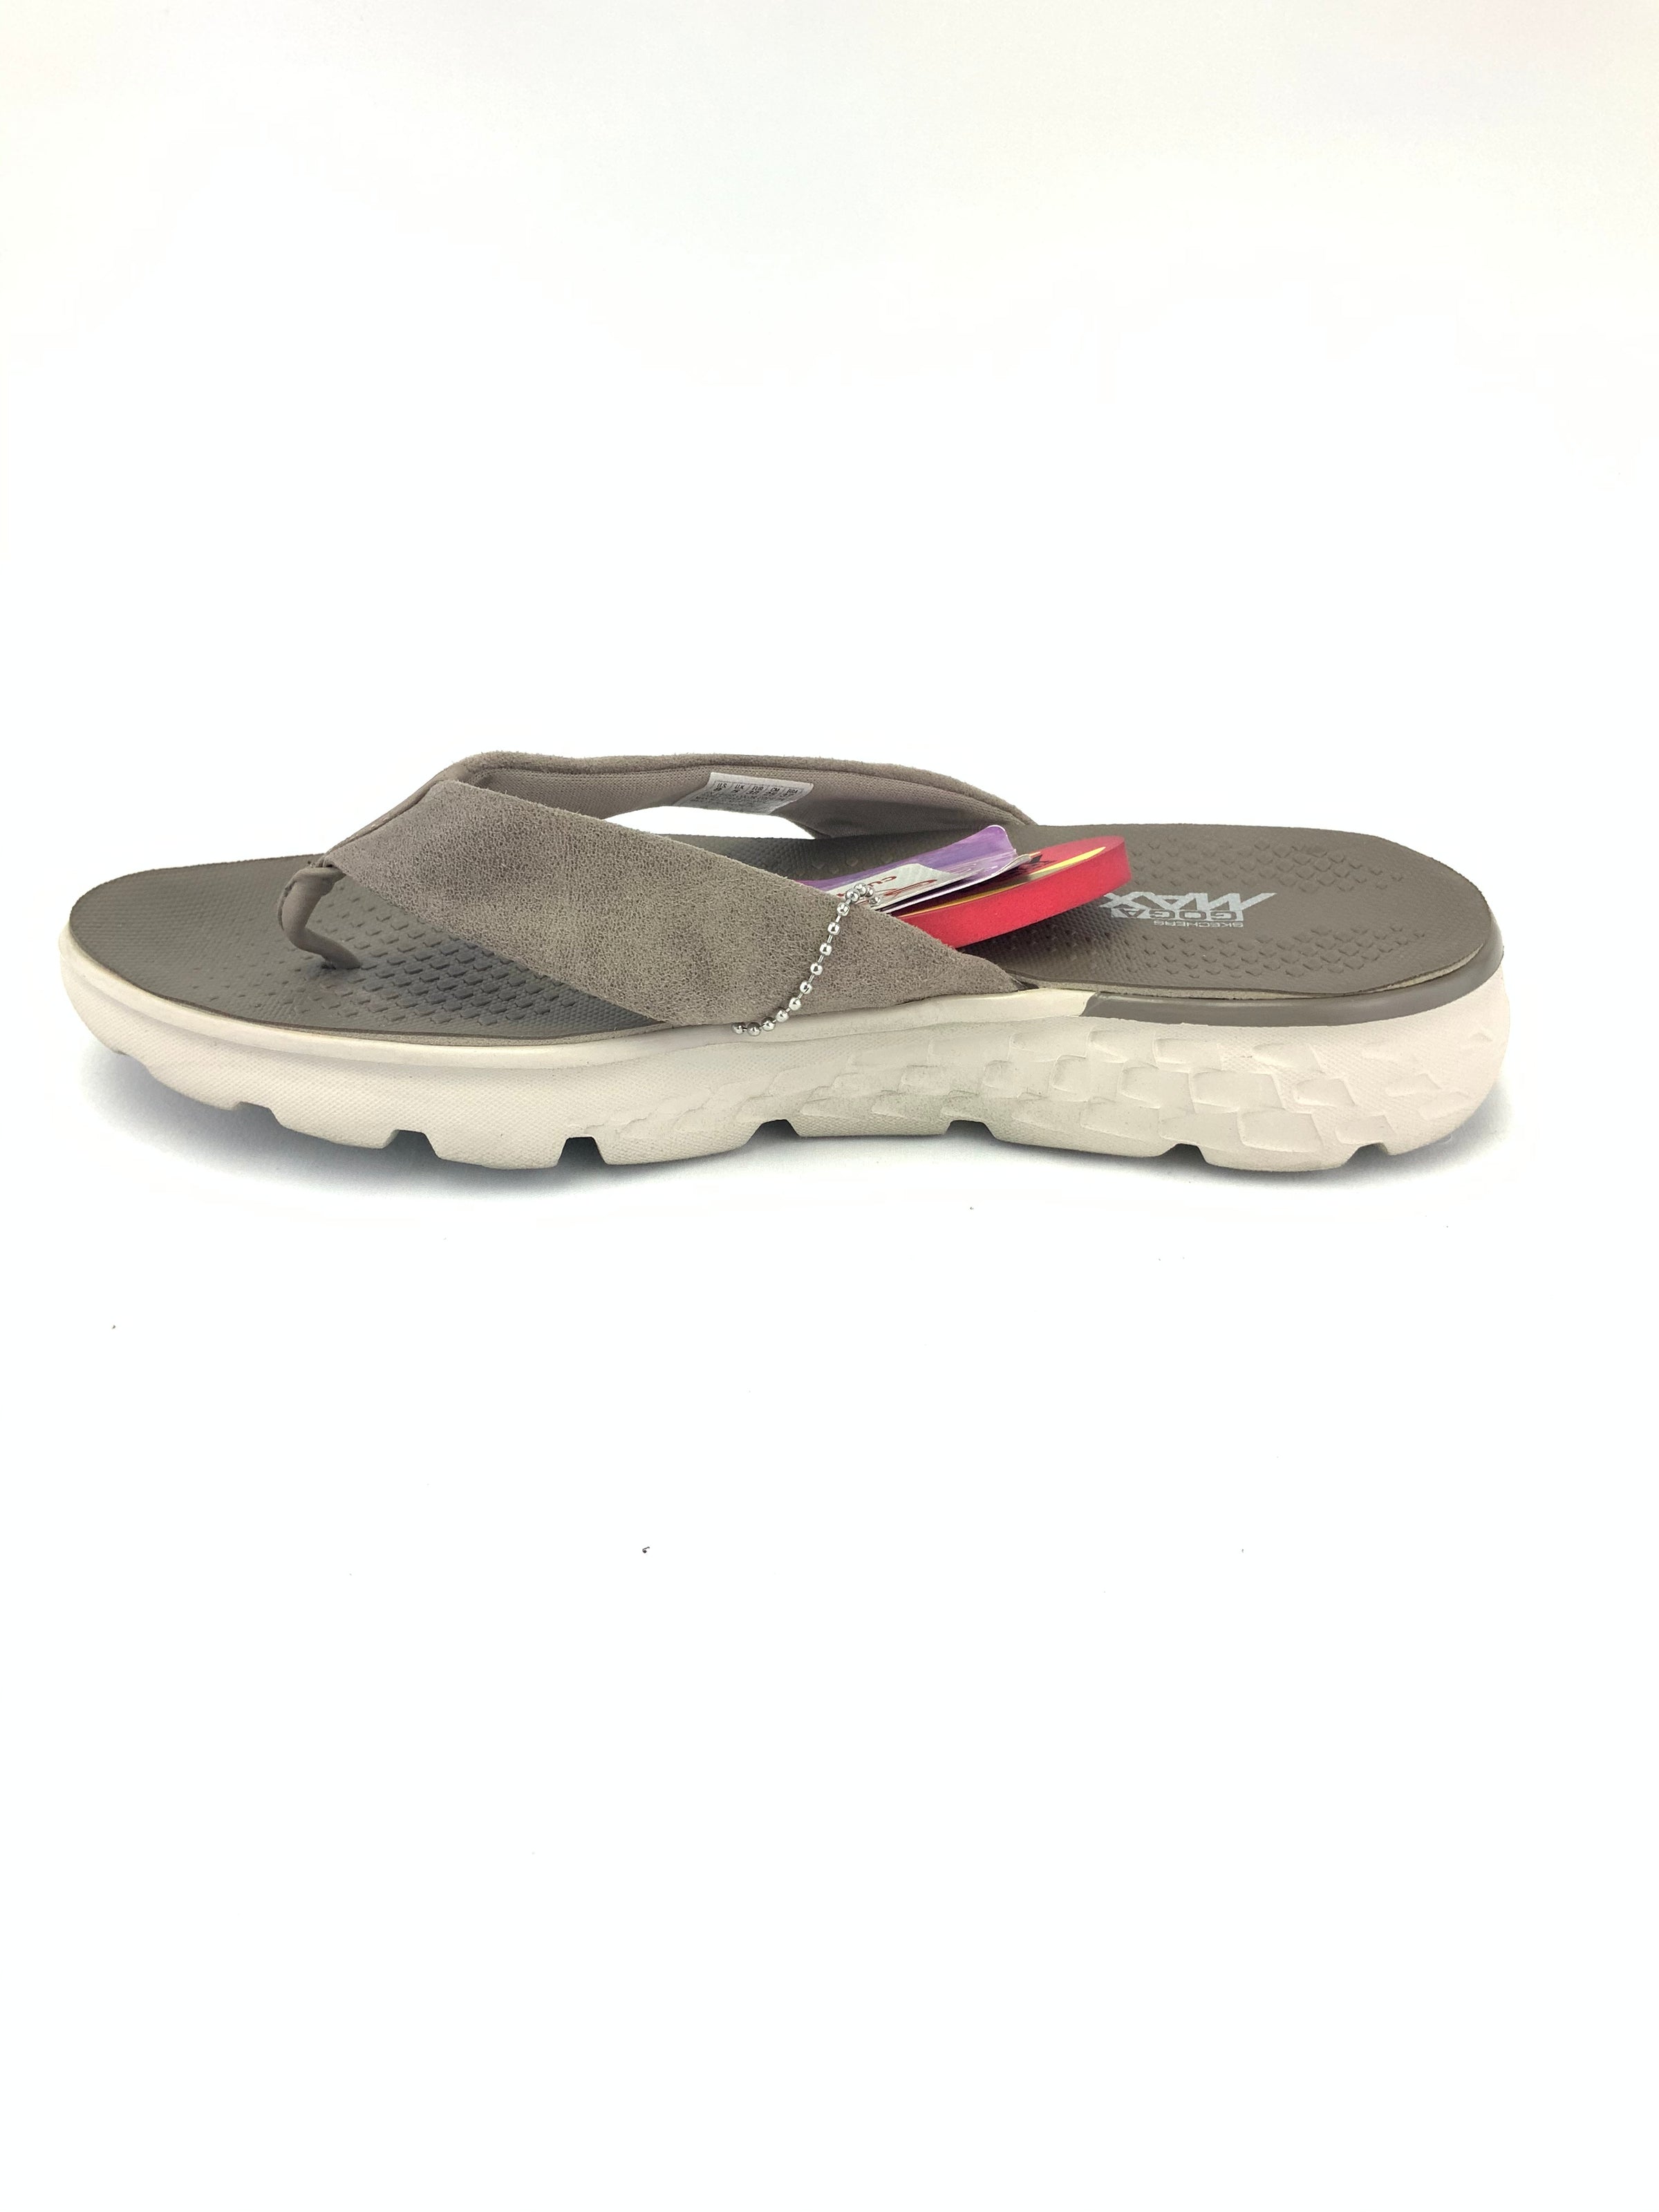 Skechers Outdoor Lifestyle Sandals Size 8 – Marti & Liz Boutique